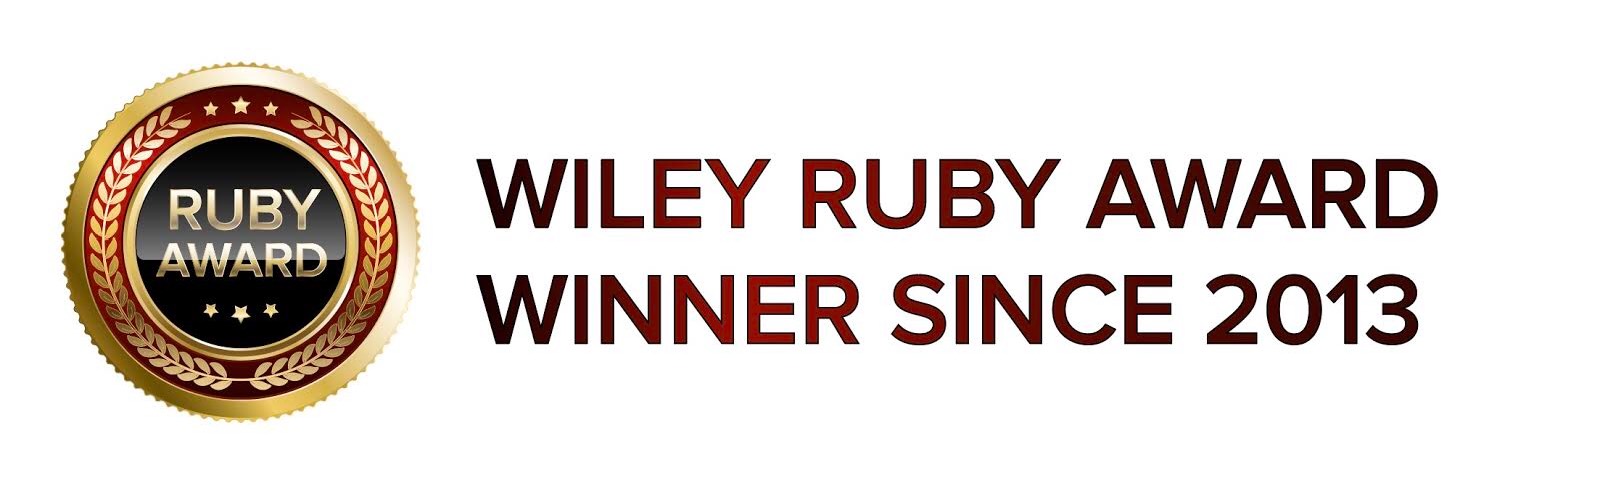 Wiley Ruby Award Winner